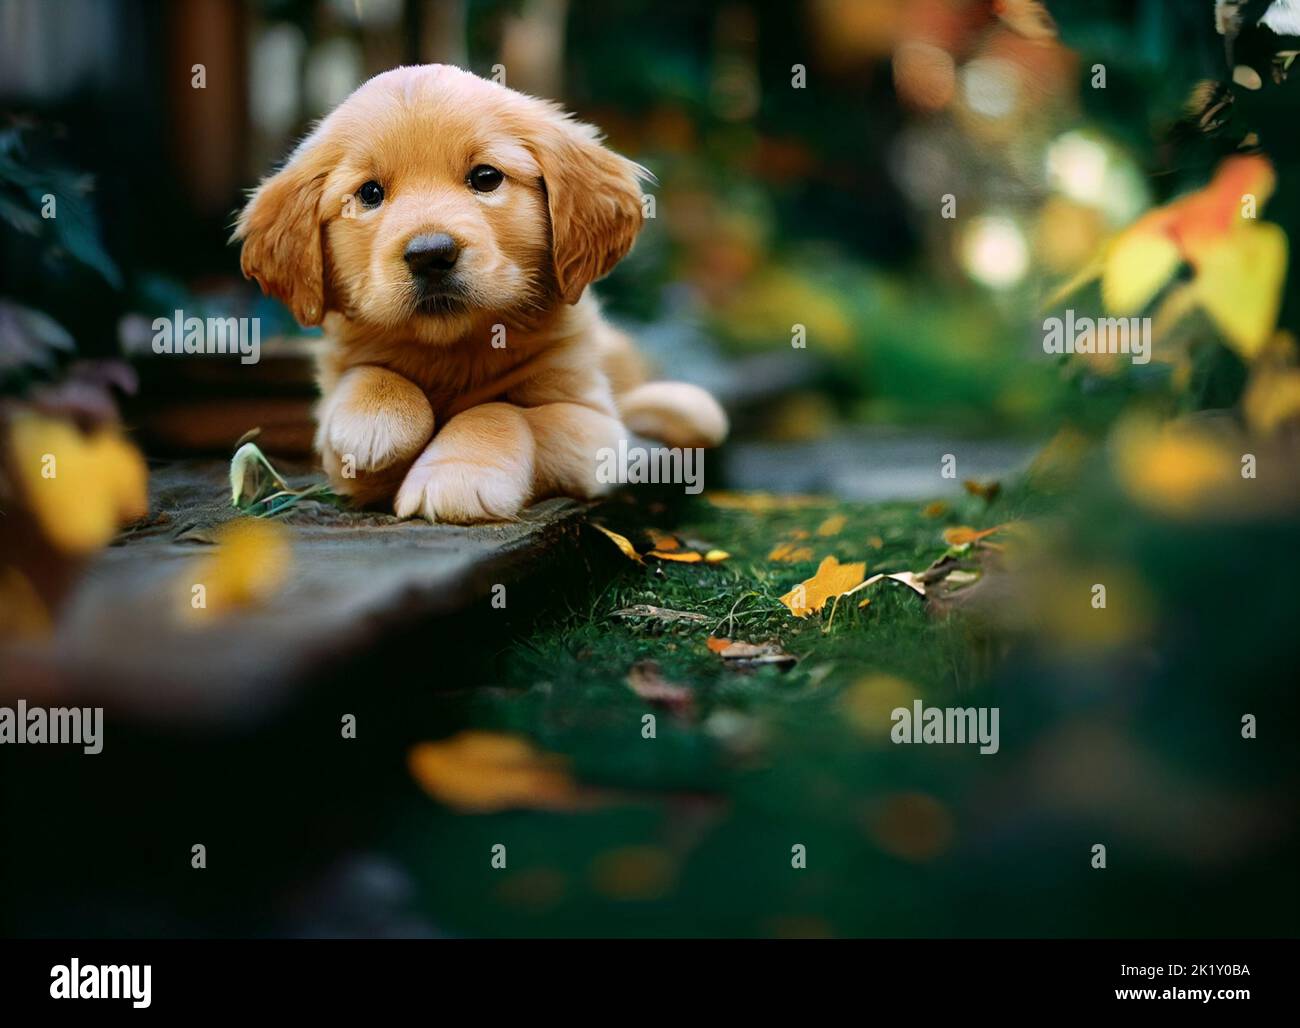 A golden retriever puppy in the garden Stock Photo